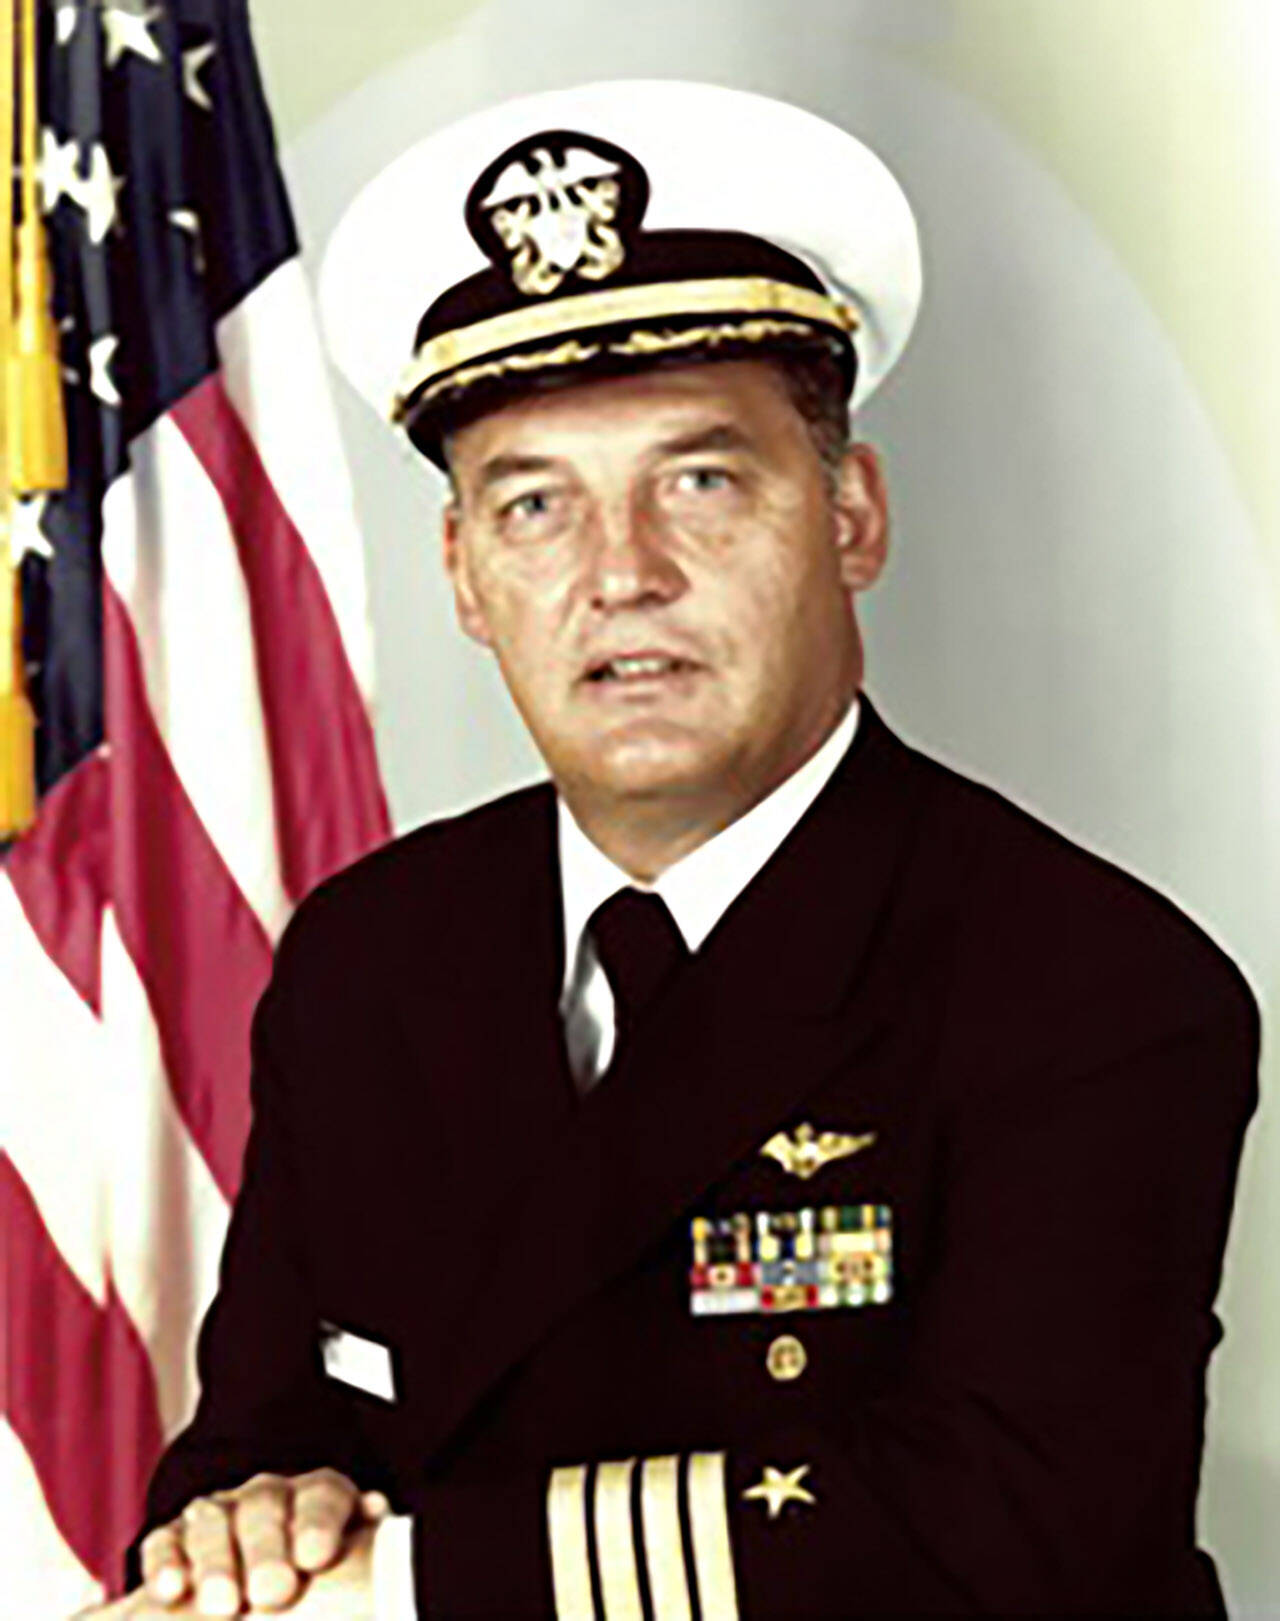 Captain Robert Fraser